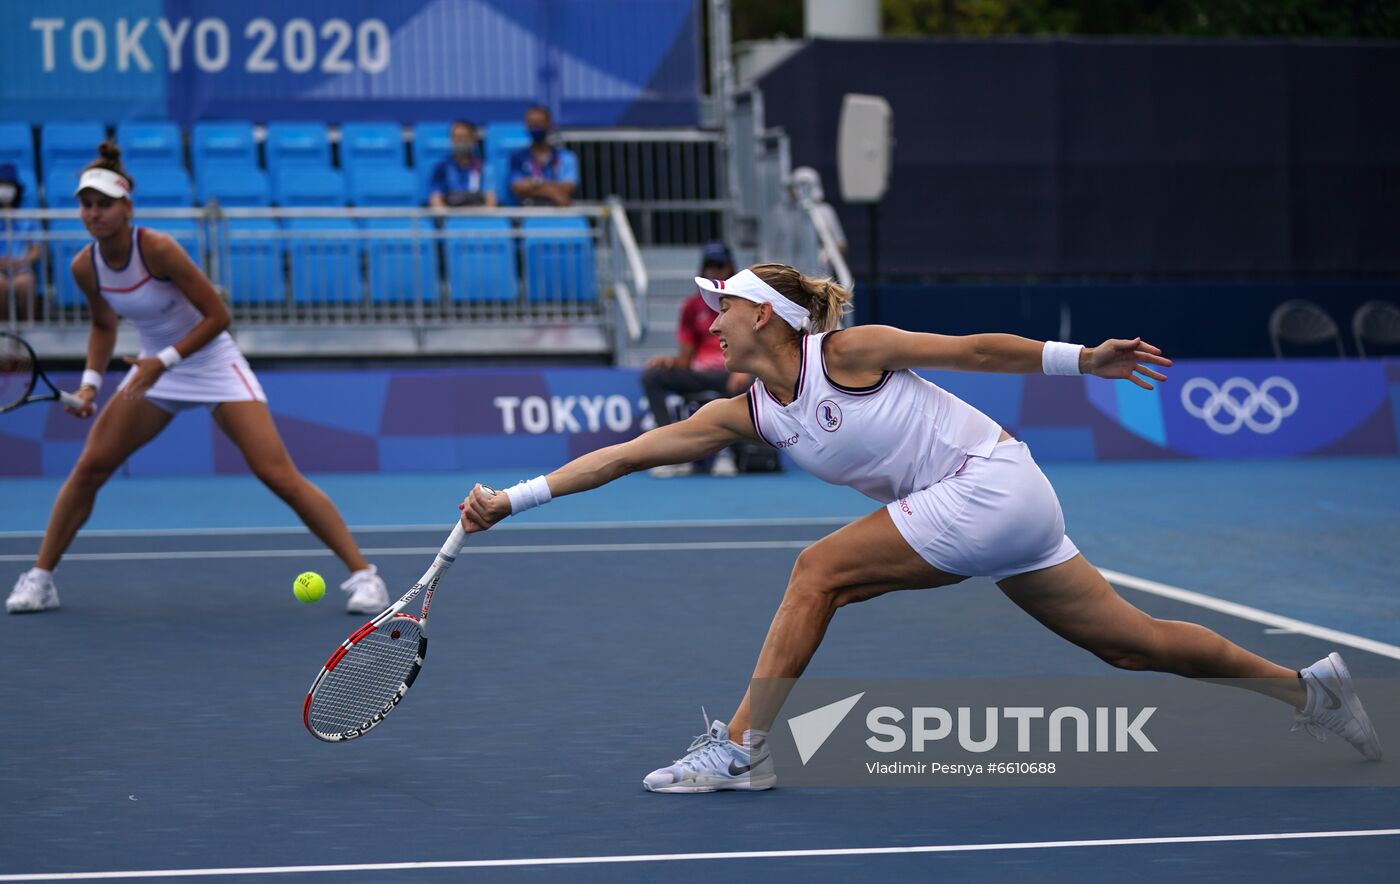 Japan Olympics 2020 Tennis Women Krejcikova/Siniakova - Kudermetova/Vesnina